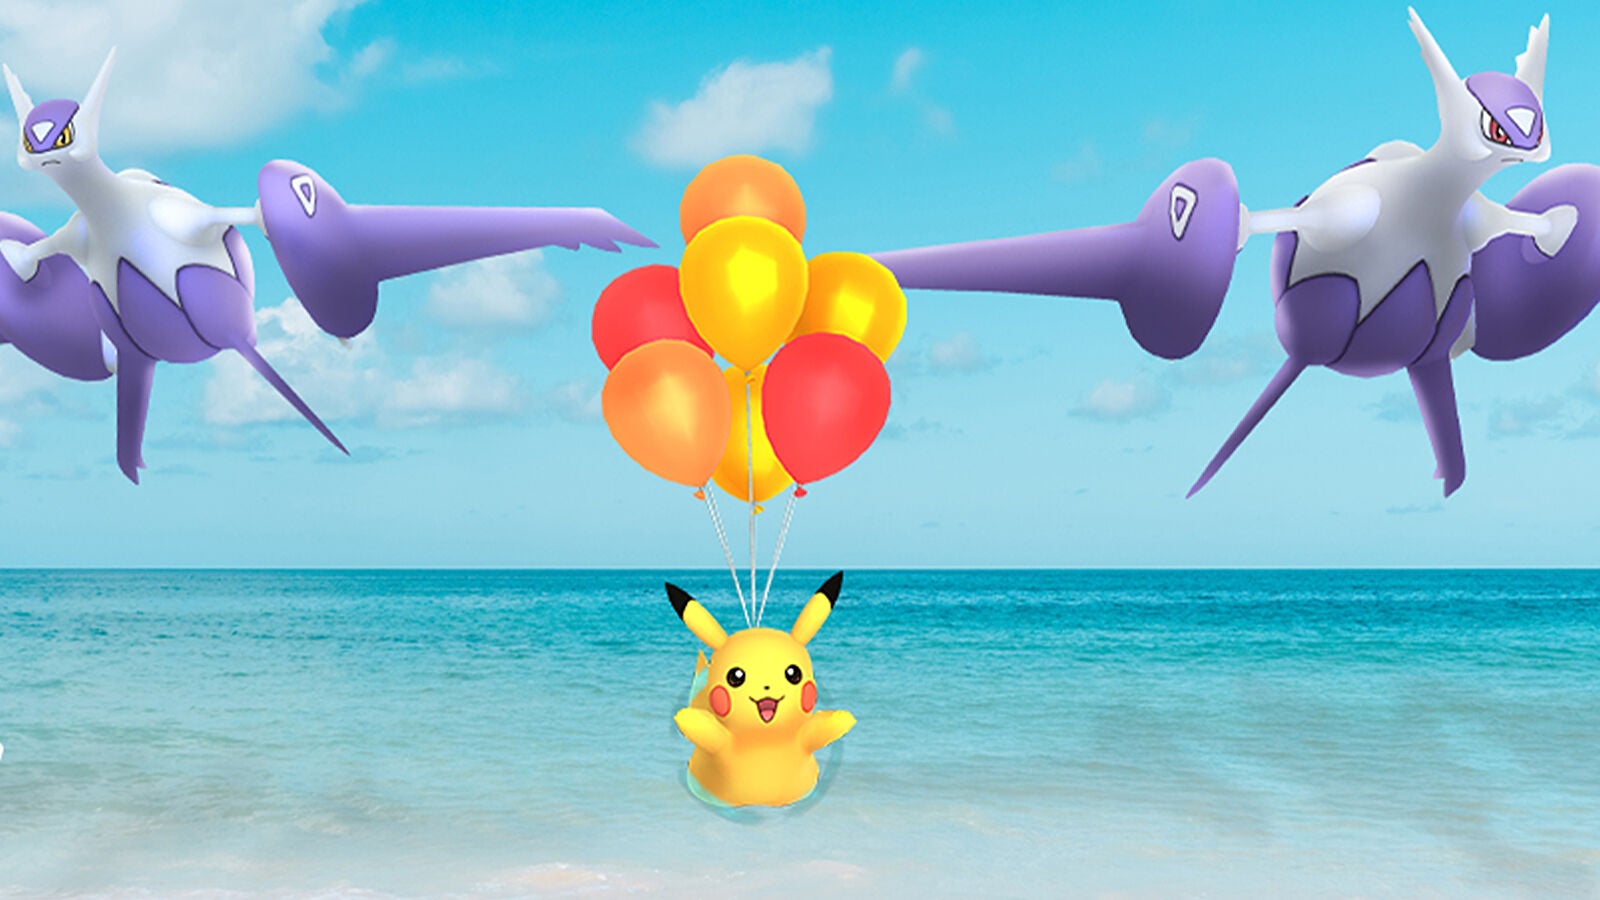 Obrazki dla Pokemon Go - zadanie Electrify the Sky i wydarzenie Air Adventures